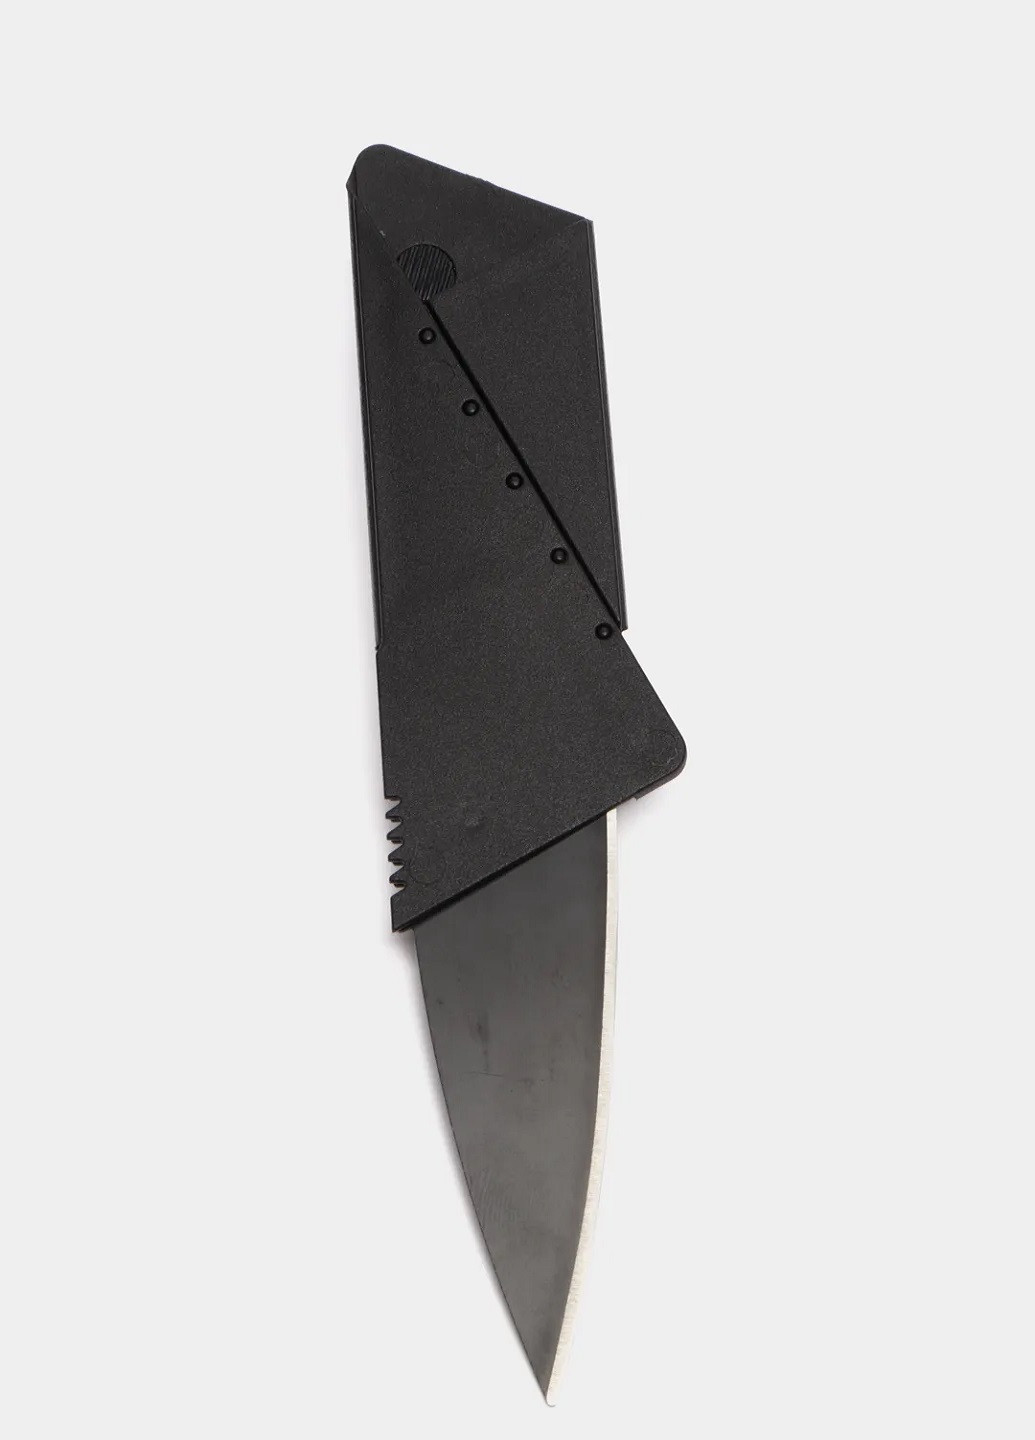 Униваерсальный туристический компактный нож кредитка VTech (260264559)